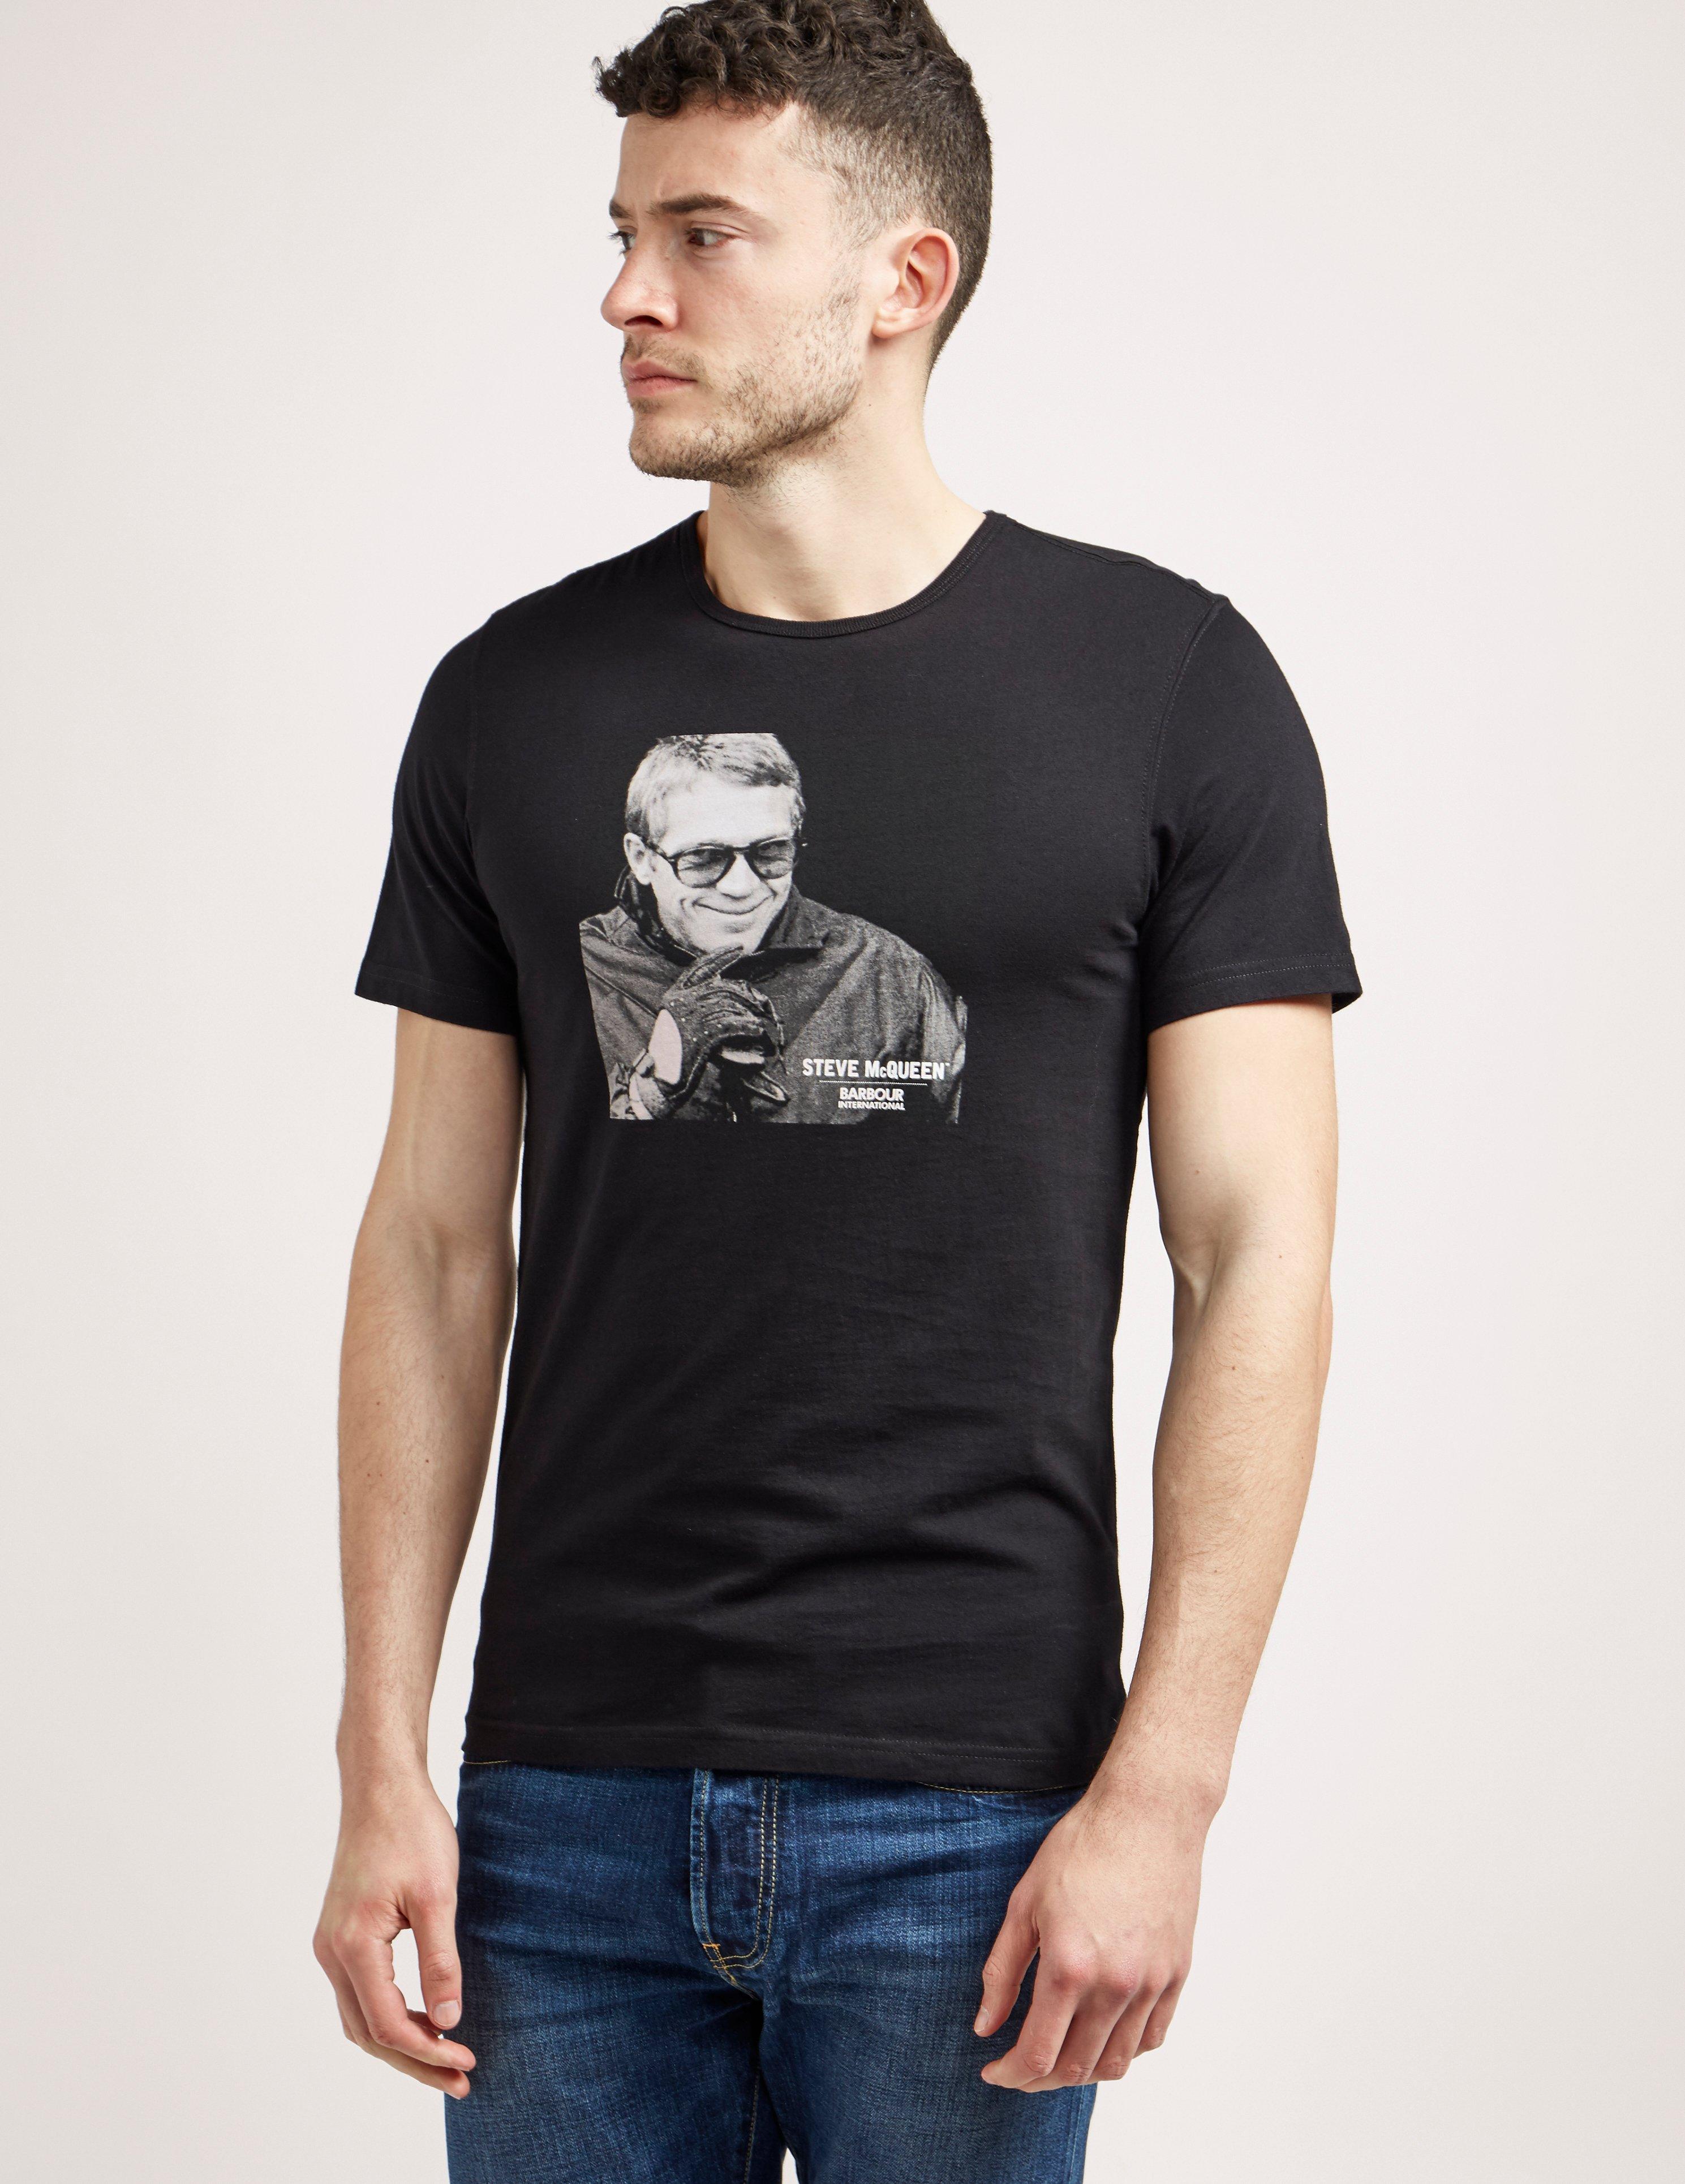 Barbour International Steve Mcqueen Smile T-shirt in Black for Men - Lyst